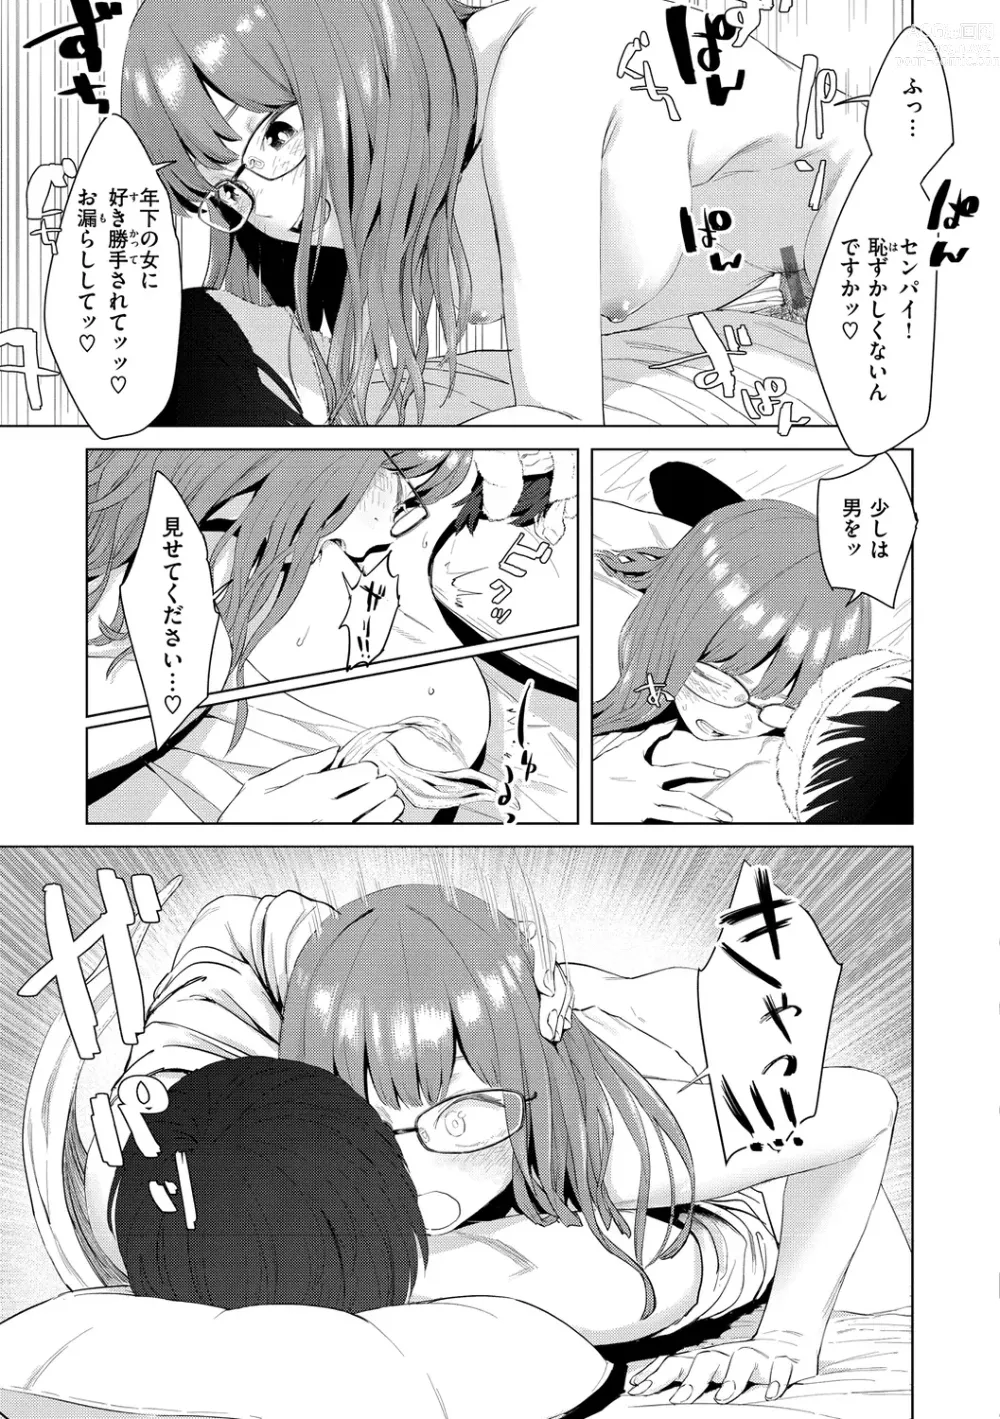 Page 17 of manga Yabai Onna